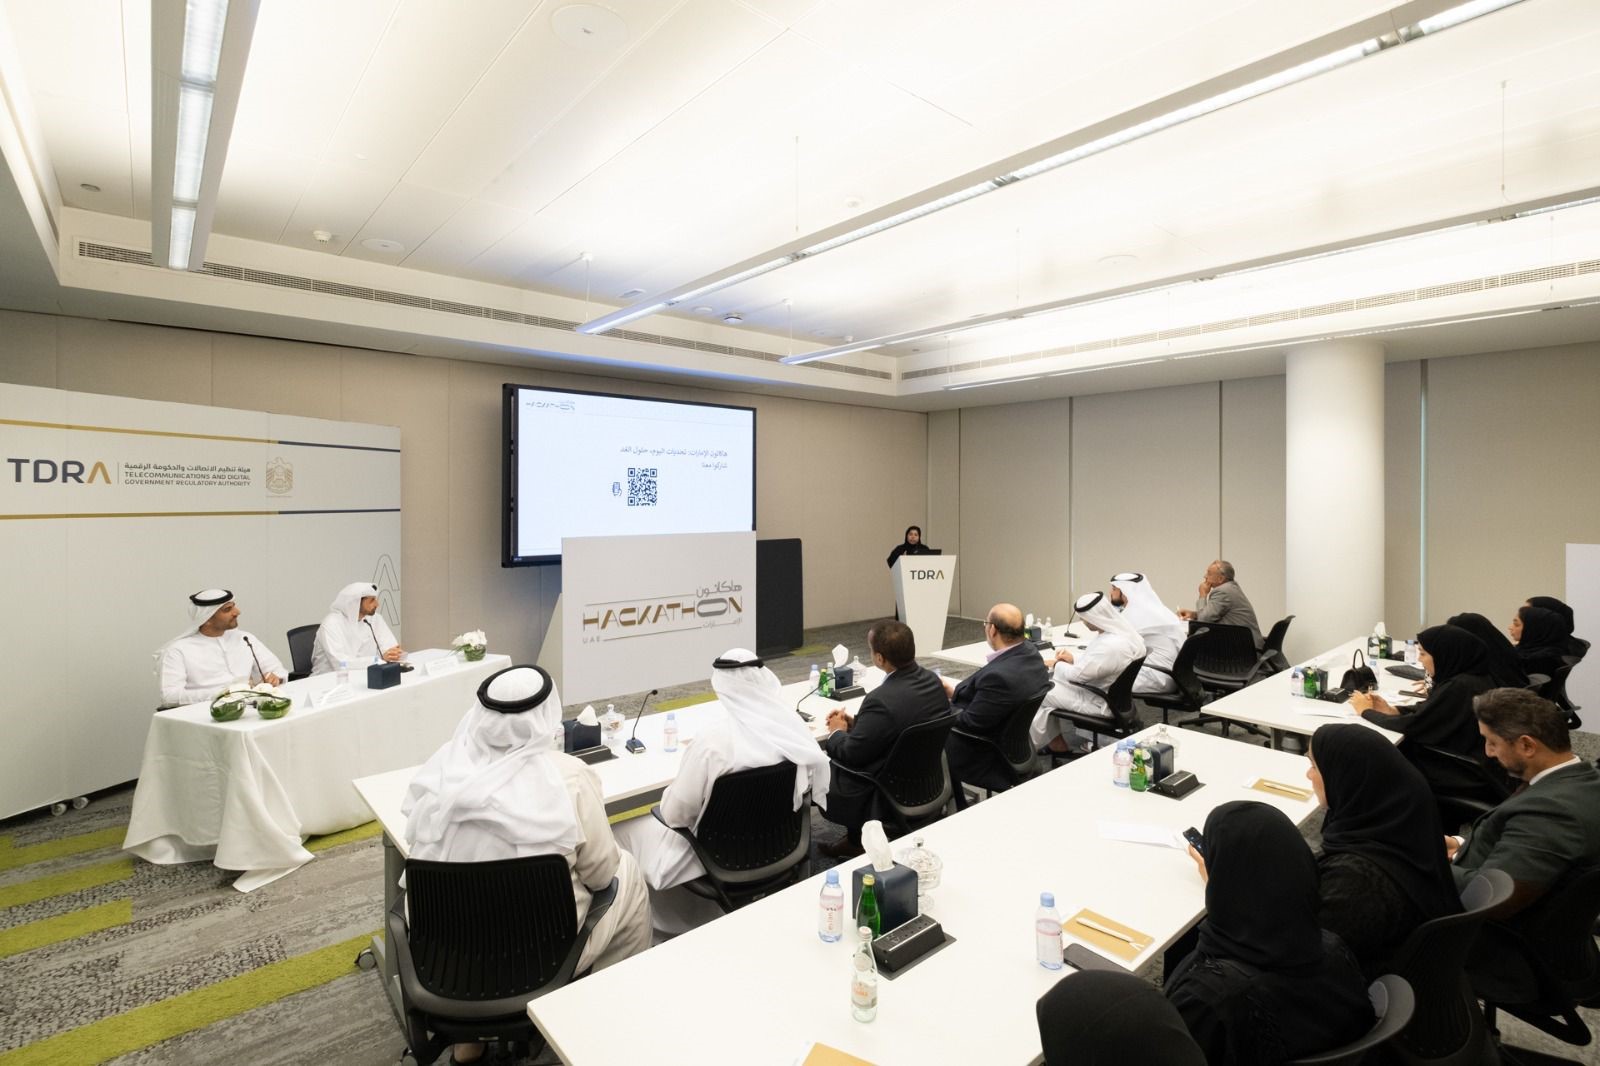 هيئة تنظيم الاتصالات والحكومة الرقمية تطلق النسخة السادسة من هاكاثون الإمارات